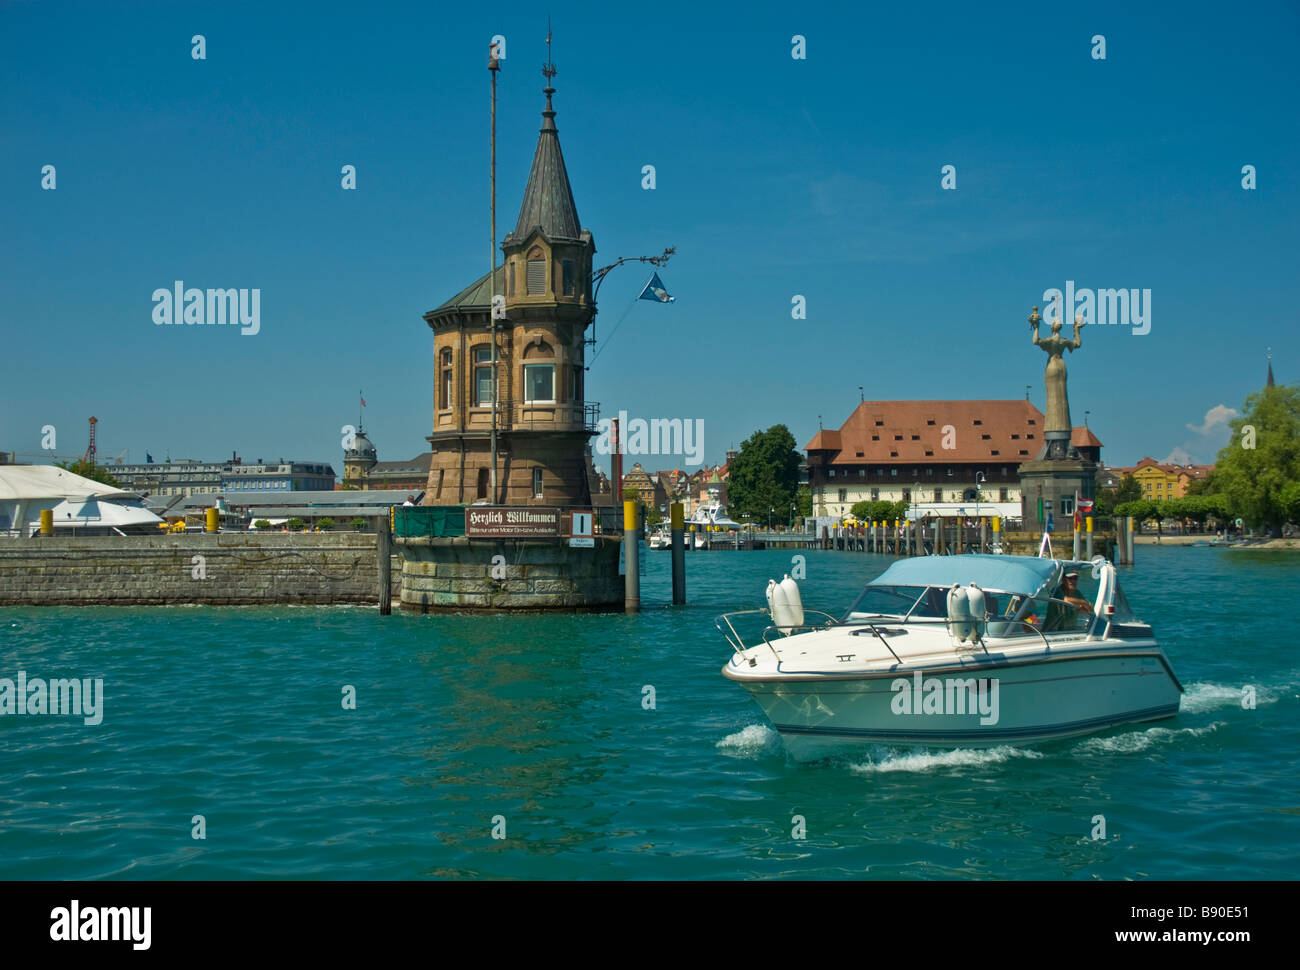 Barco en la entrada del puerto de Constanza, el lago de Constanza en Alemania | Hafeneinfahrt mit Boot Am Yachthafen Constanza Bodensee Deutschland Foto de stock